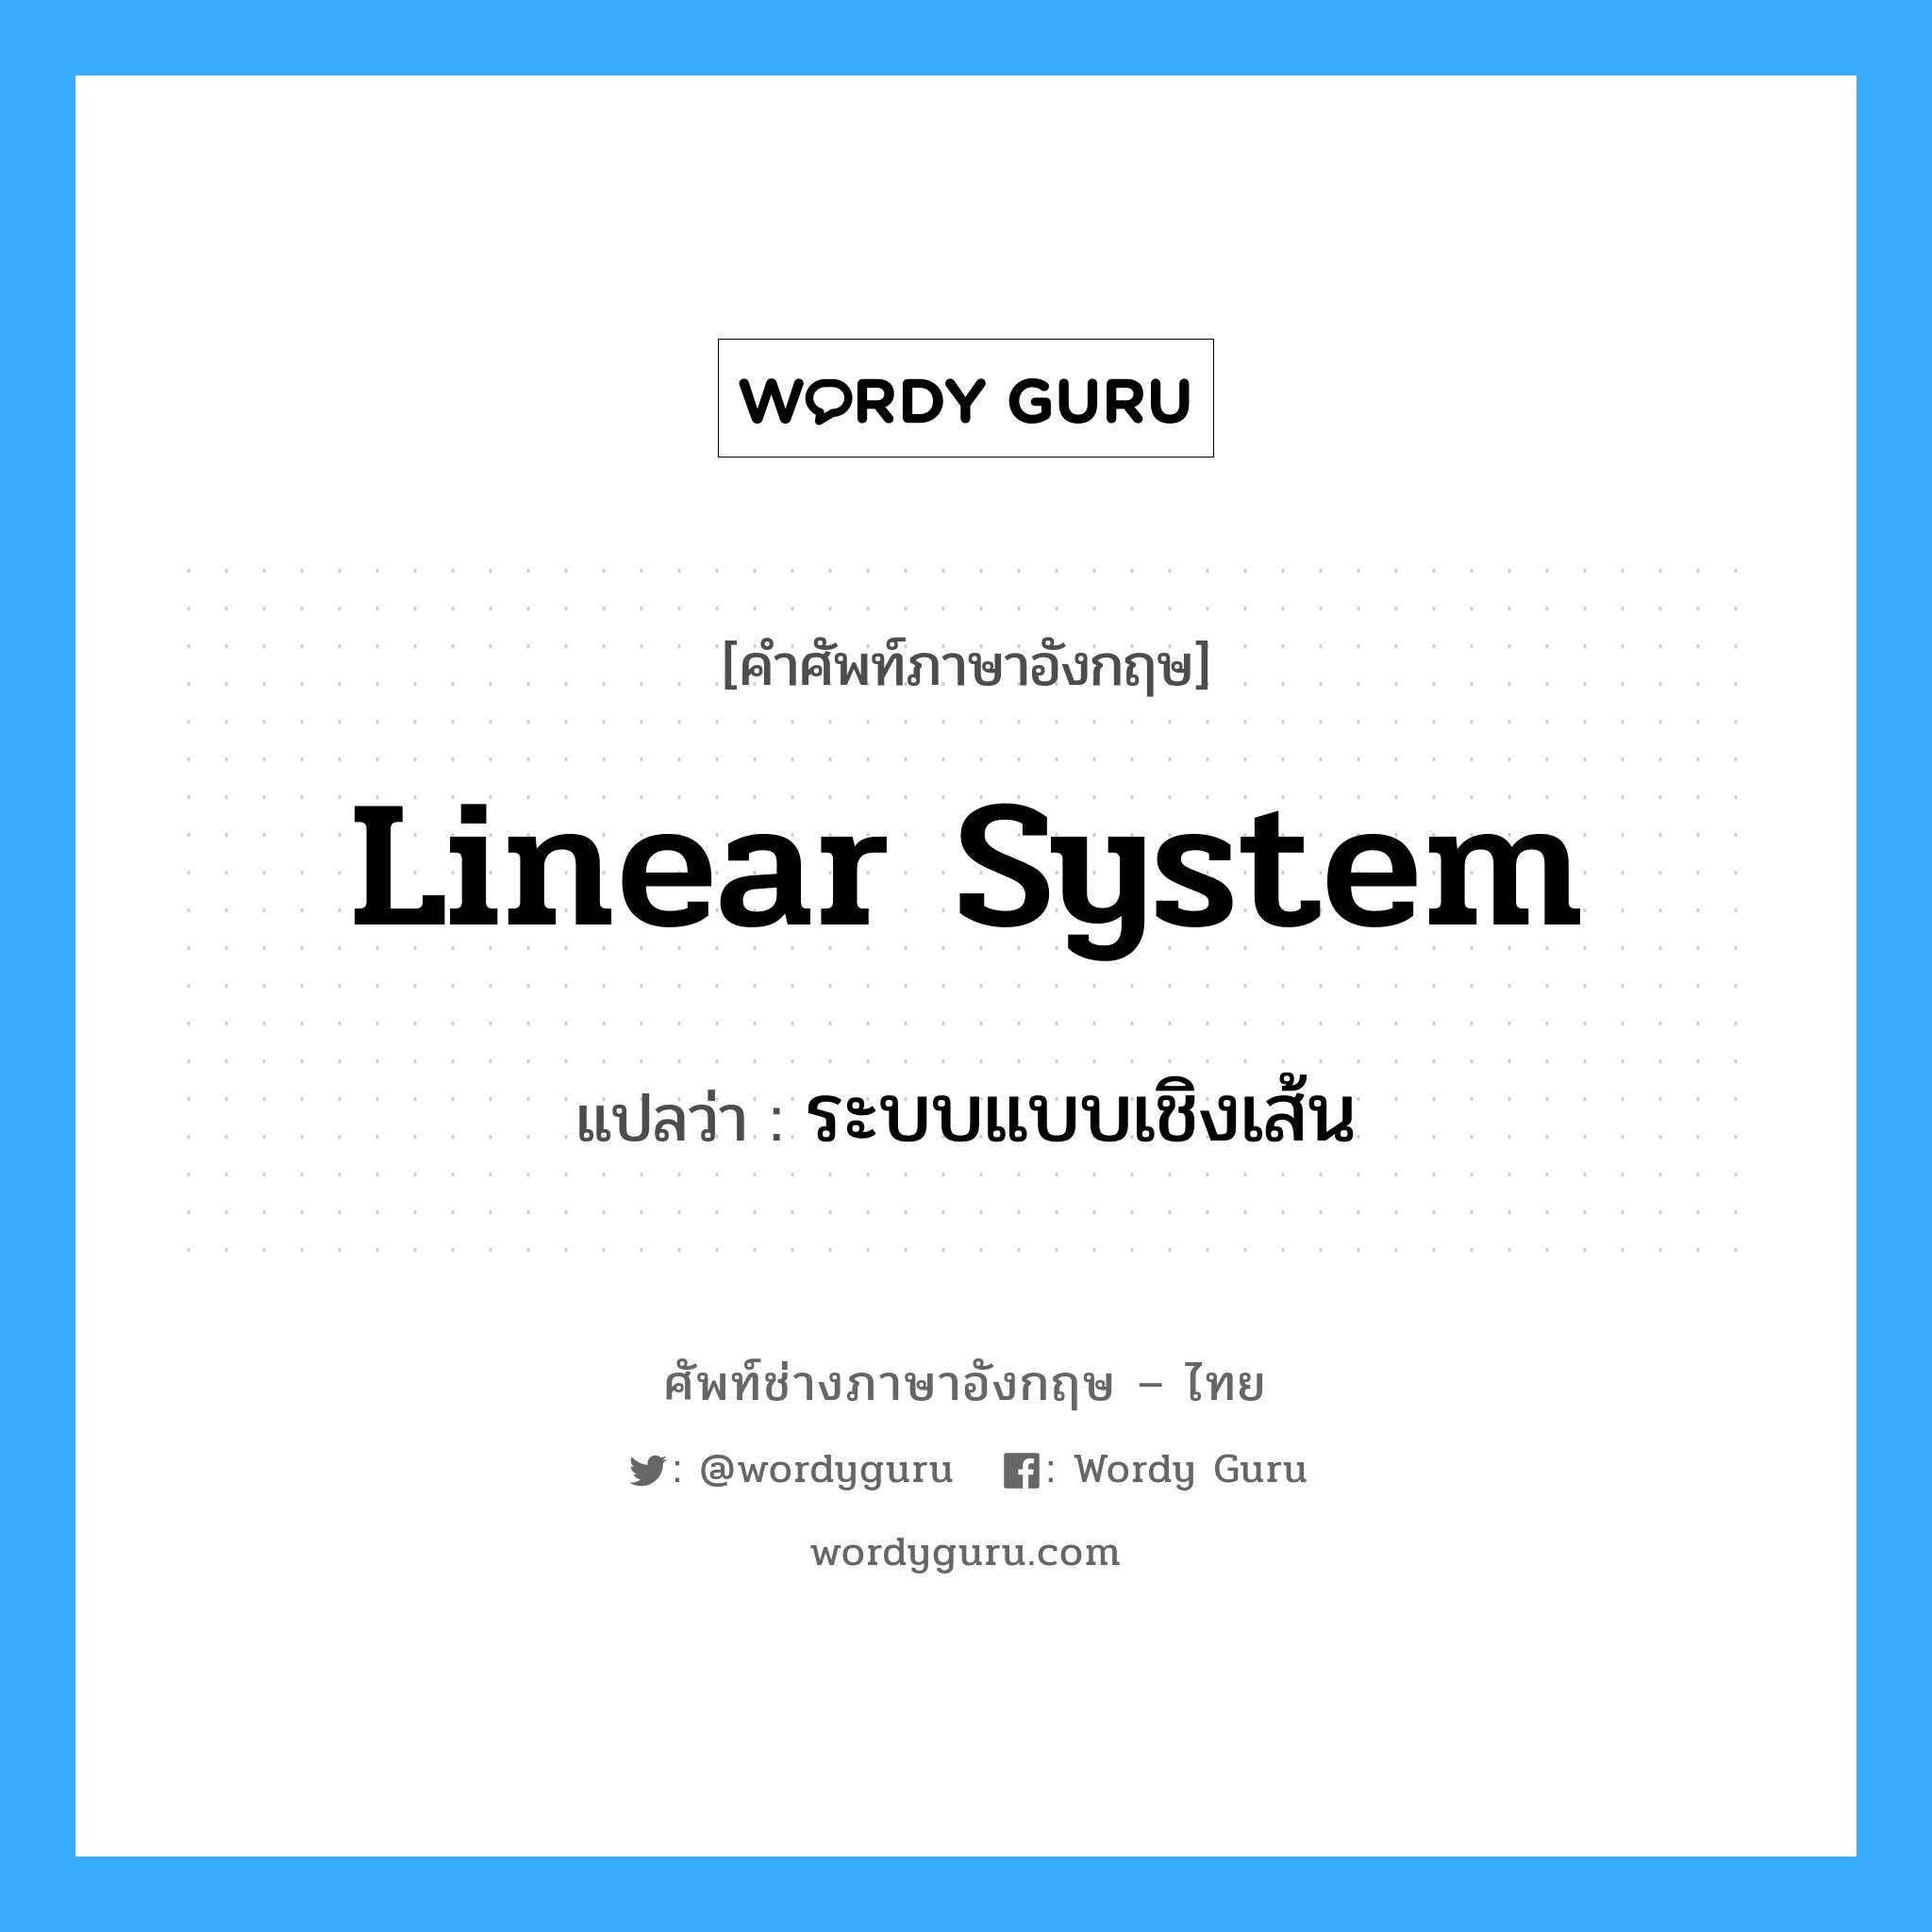 ระบบแบบเชิงเส้น ภาษาอังกฤษ?, คำศัพท์ช่างภาษาอังกฤษ - ไทย ระบบแบบเชิงเส้น คำศัพท์ภาษาอังกฤษ ระบบแบบเชิงเส้น แปลว่า linear system